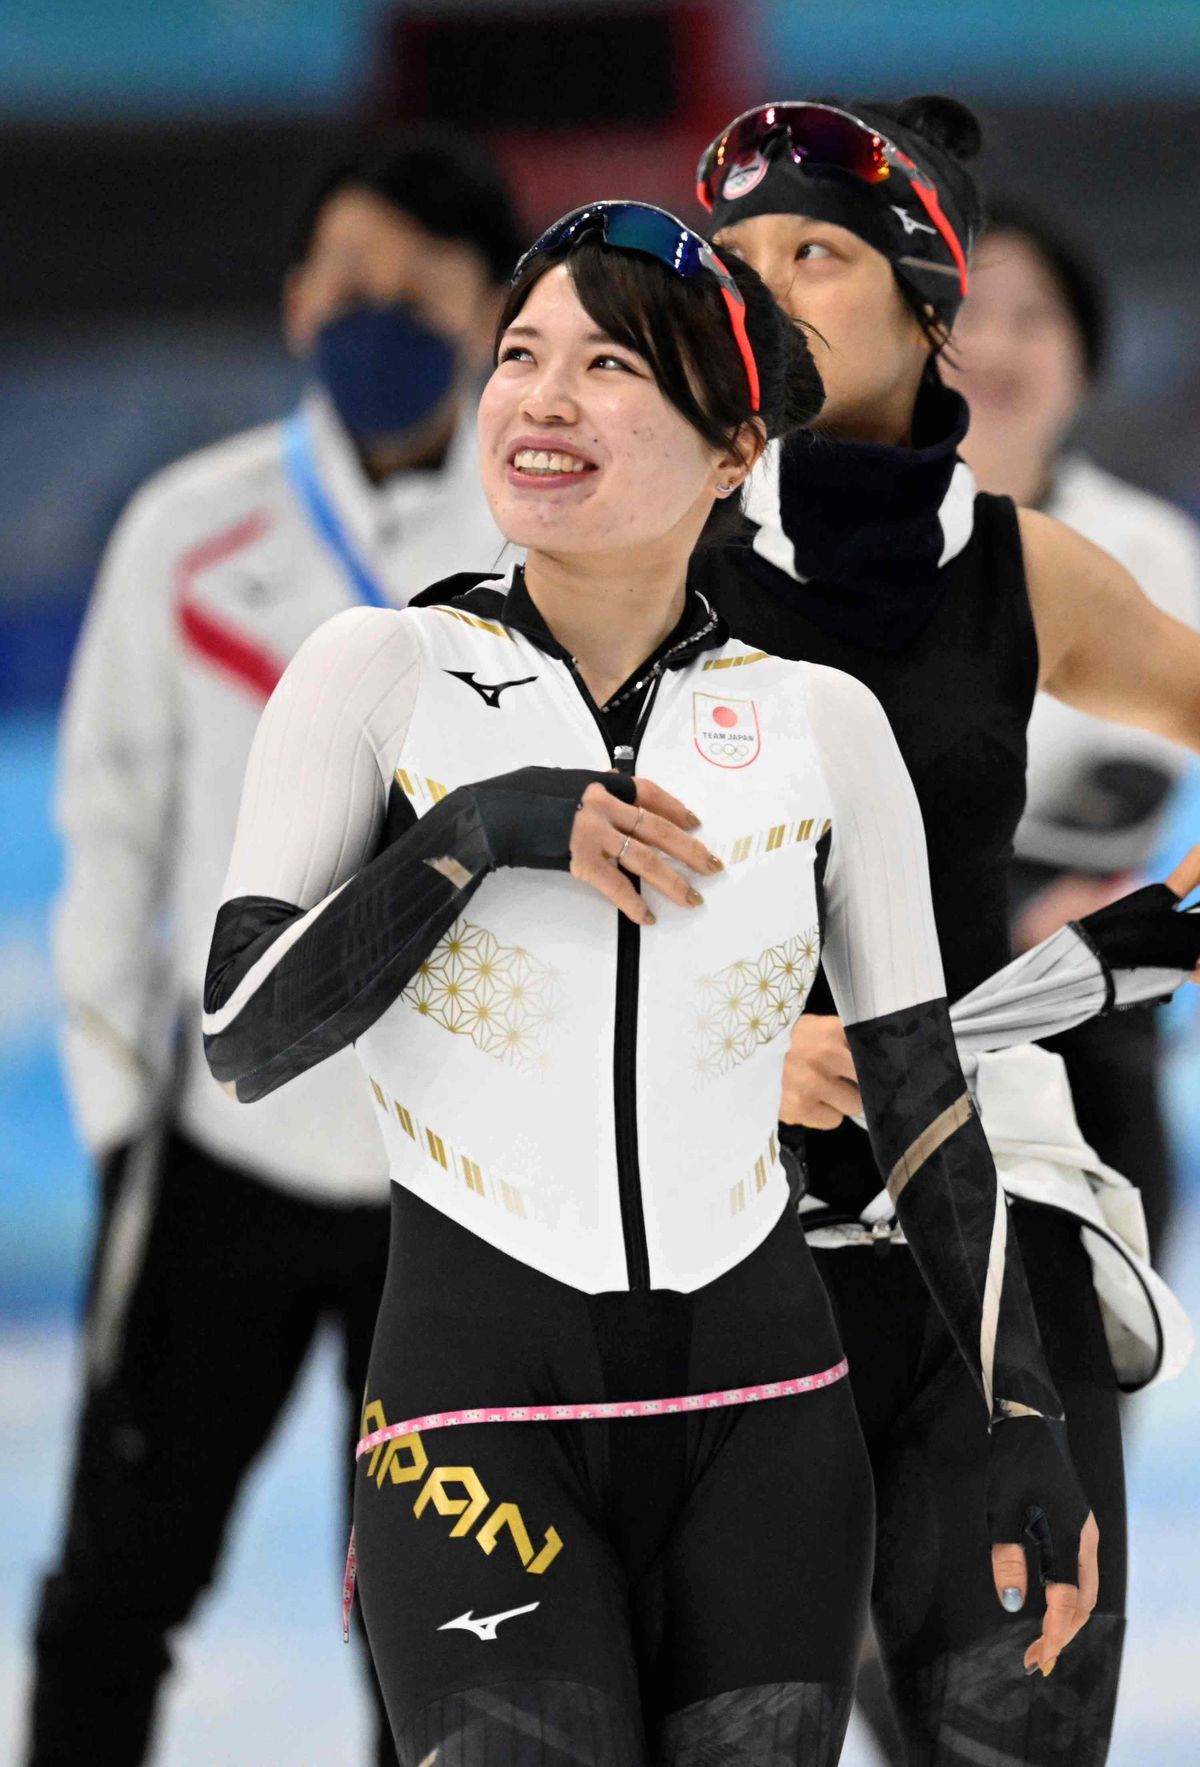 スピードスケート佐藤綾乃「笑顔でオリンピックを迎え、笑顔で終える」